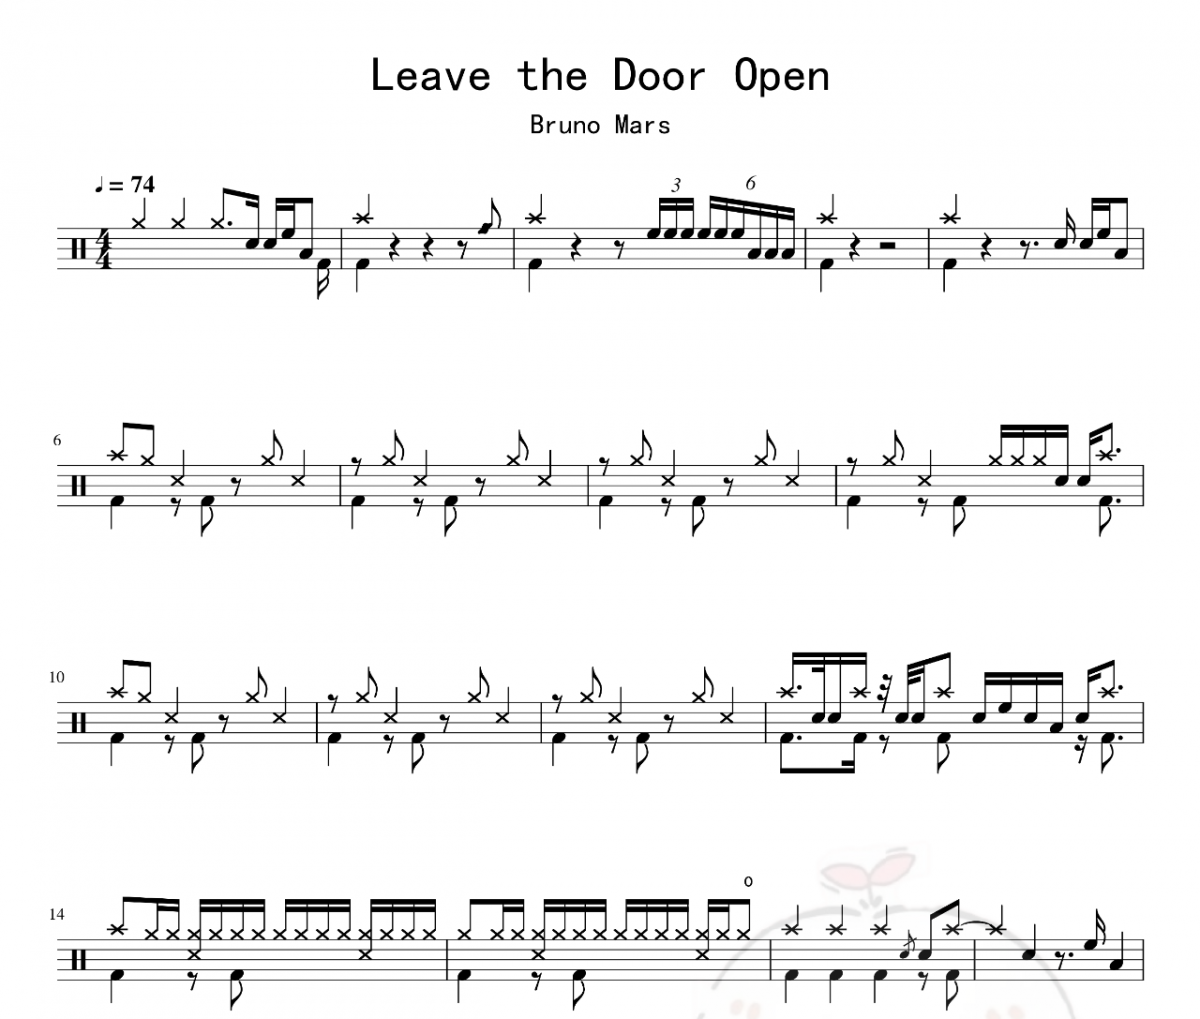 Bruno Mars-Leave the Door Open架子鼓谱爵士鼓曲谱 老虎不说谎制谱